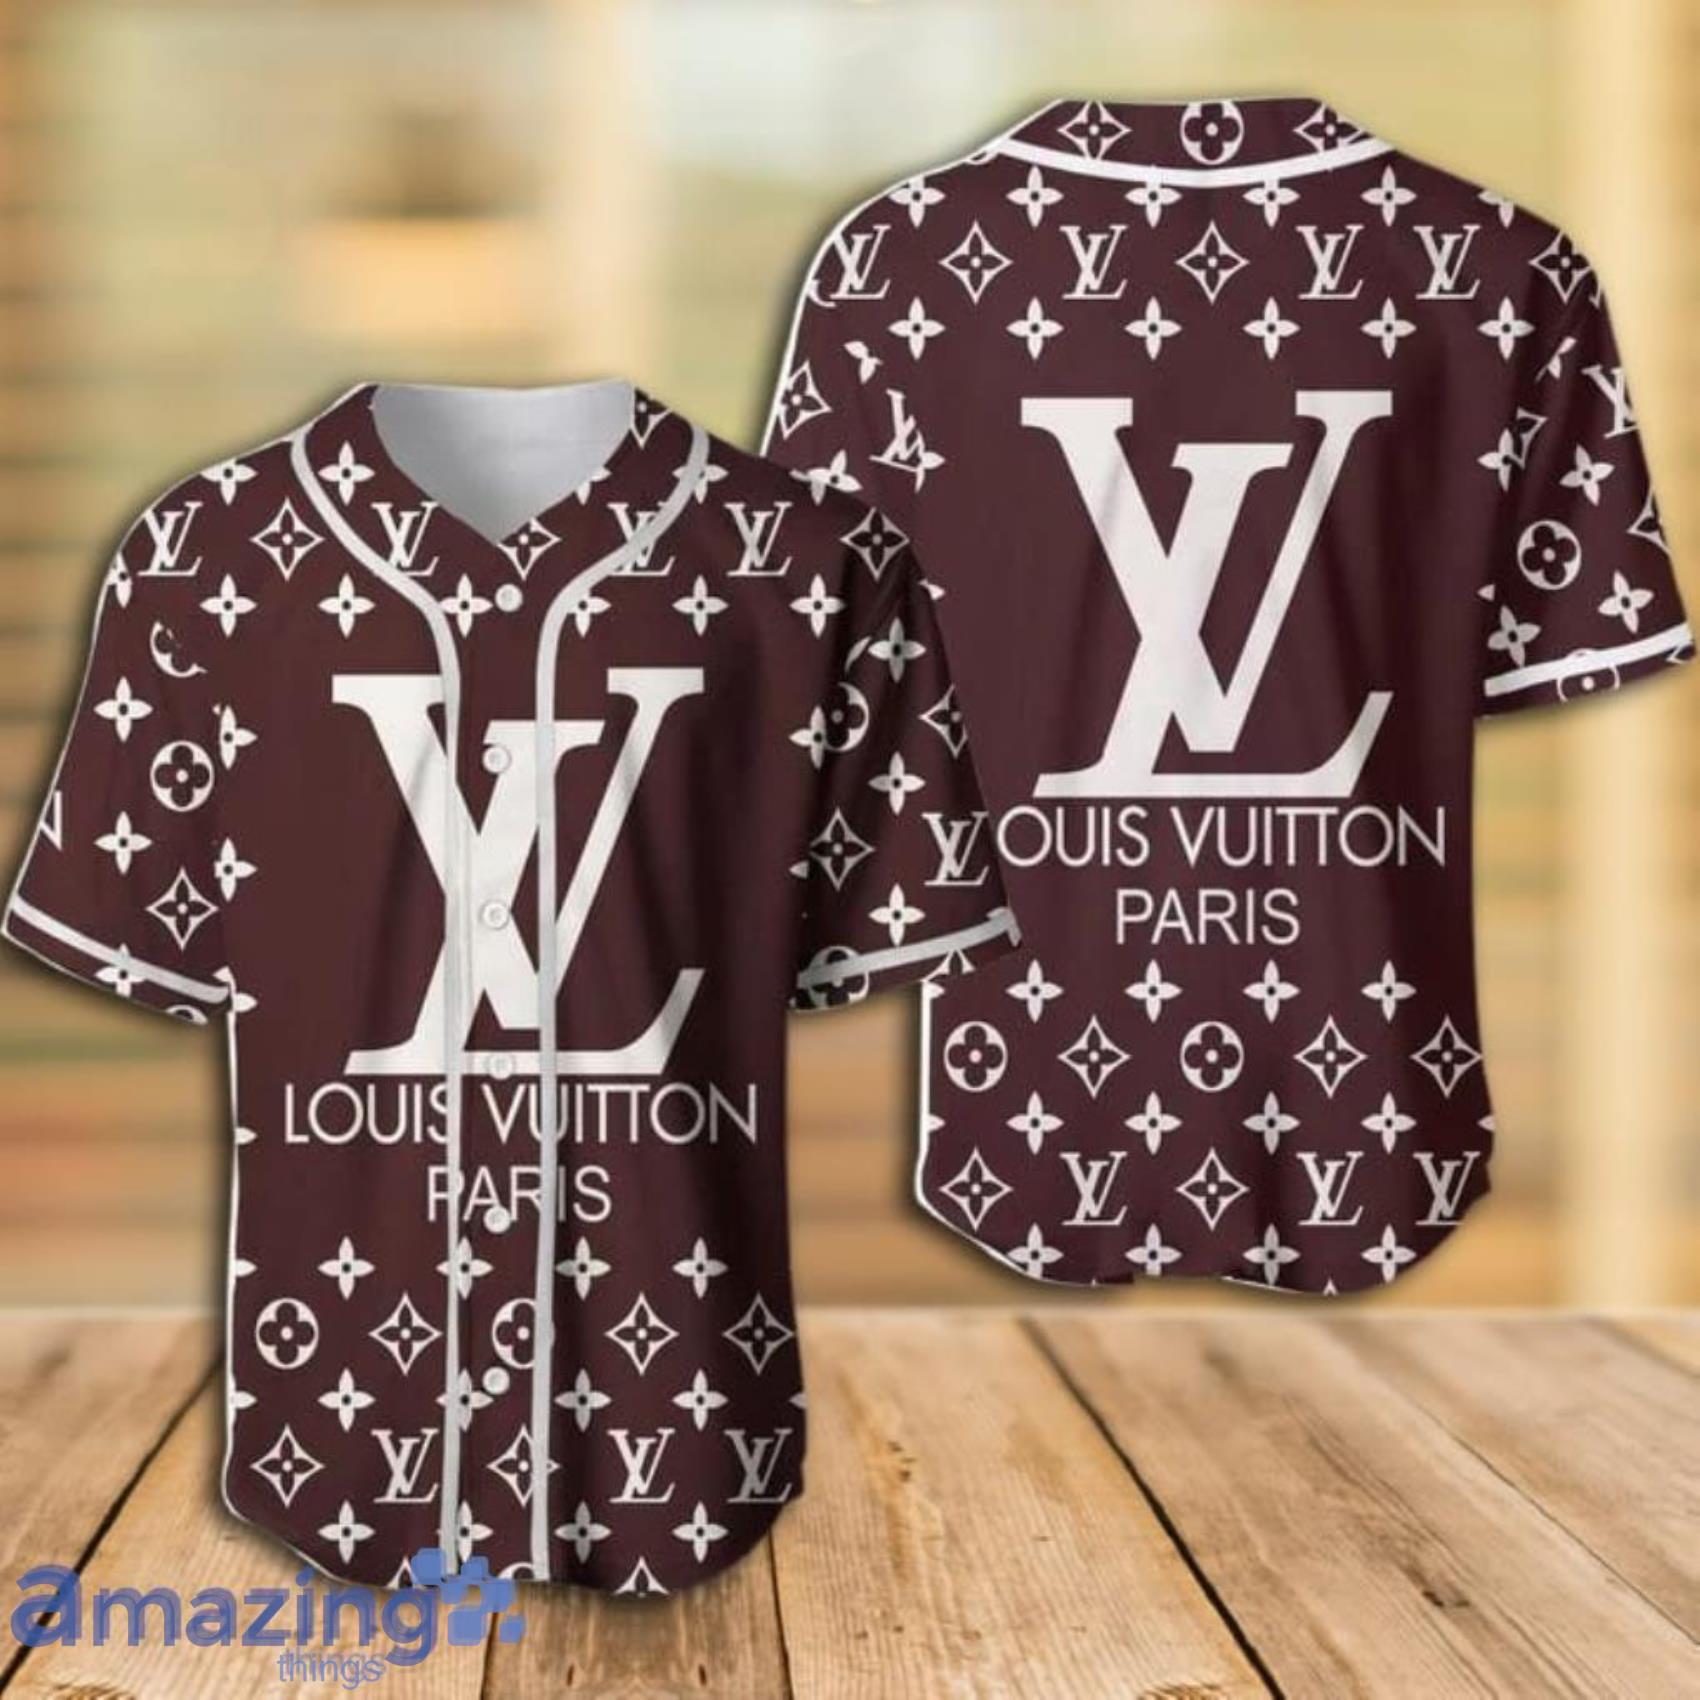 Louis Vuitton Paris Baseball Jersey Clothes Sport For Women